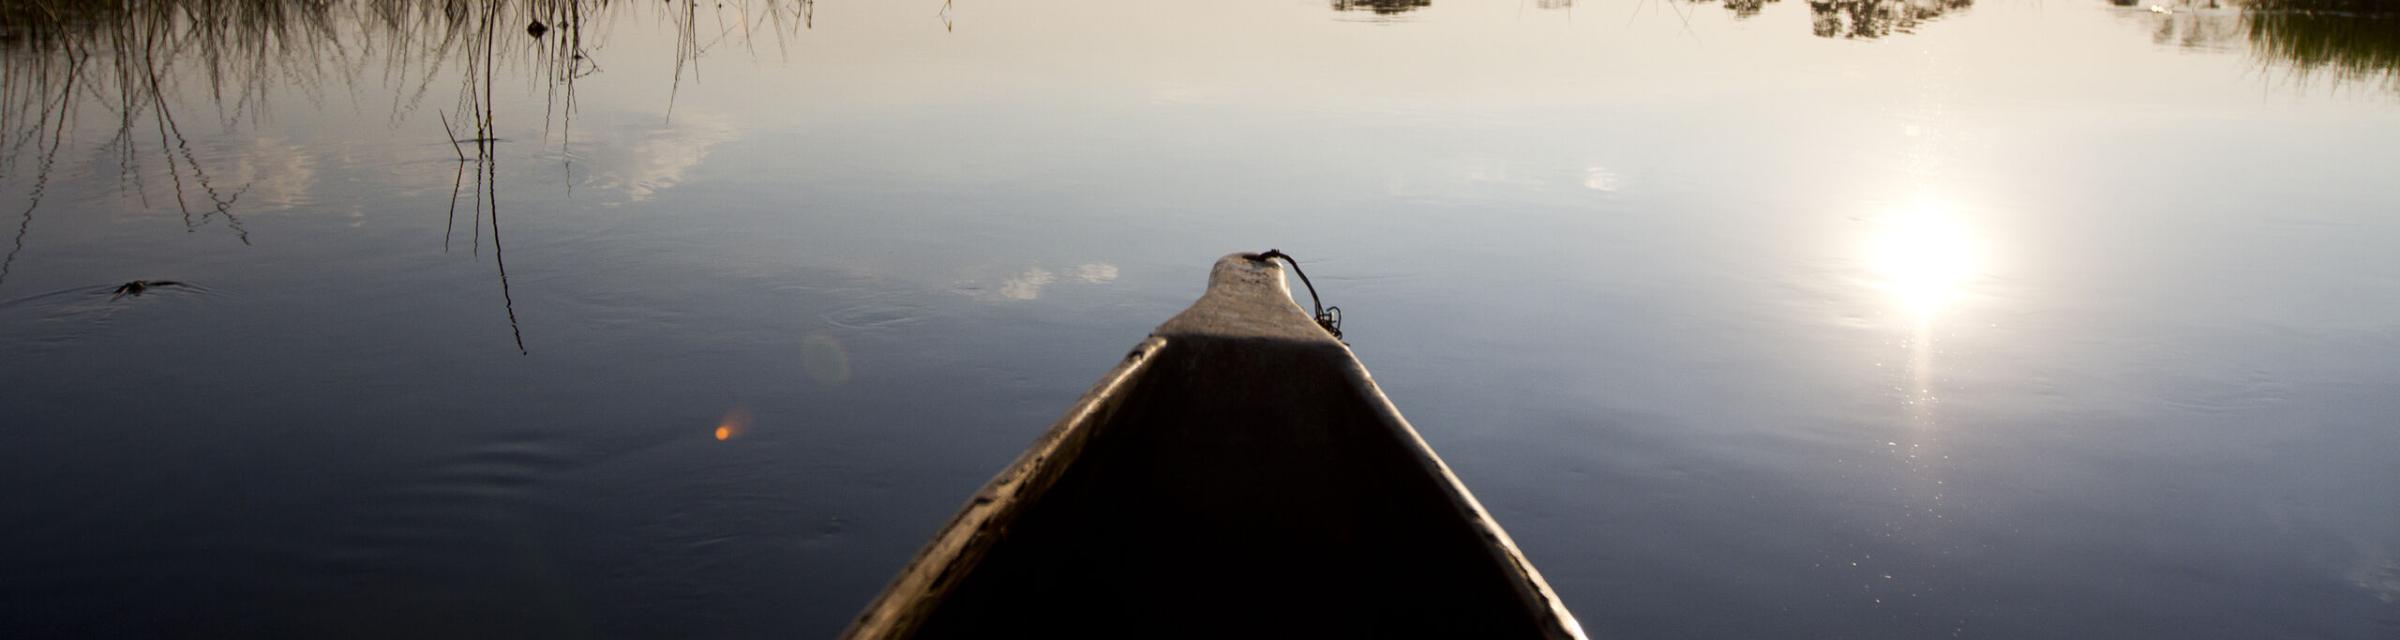 A canoe paddles on a lake.